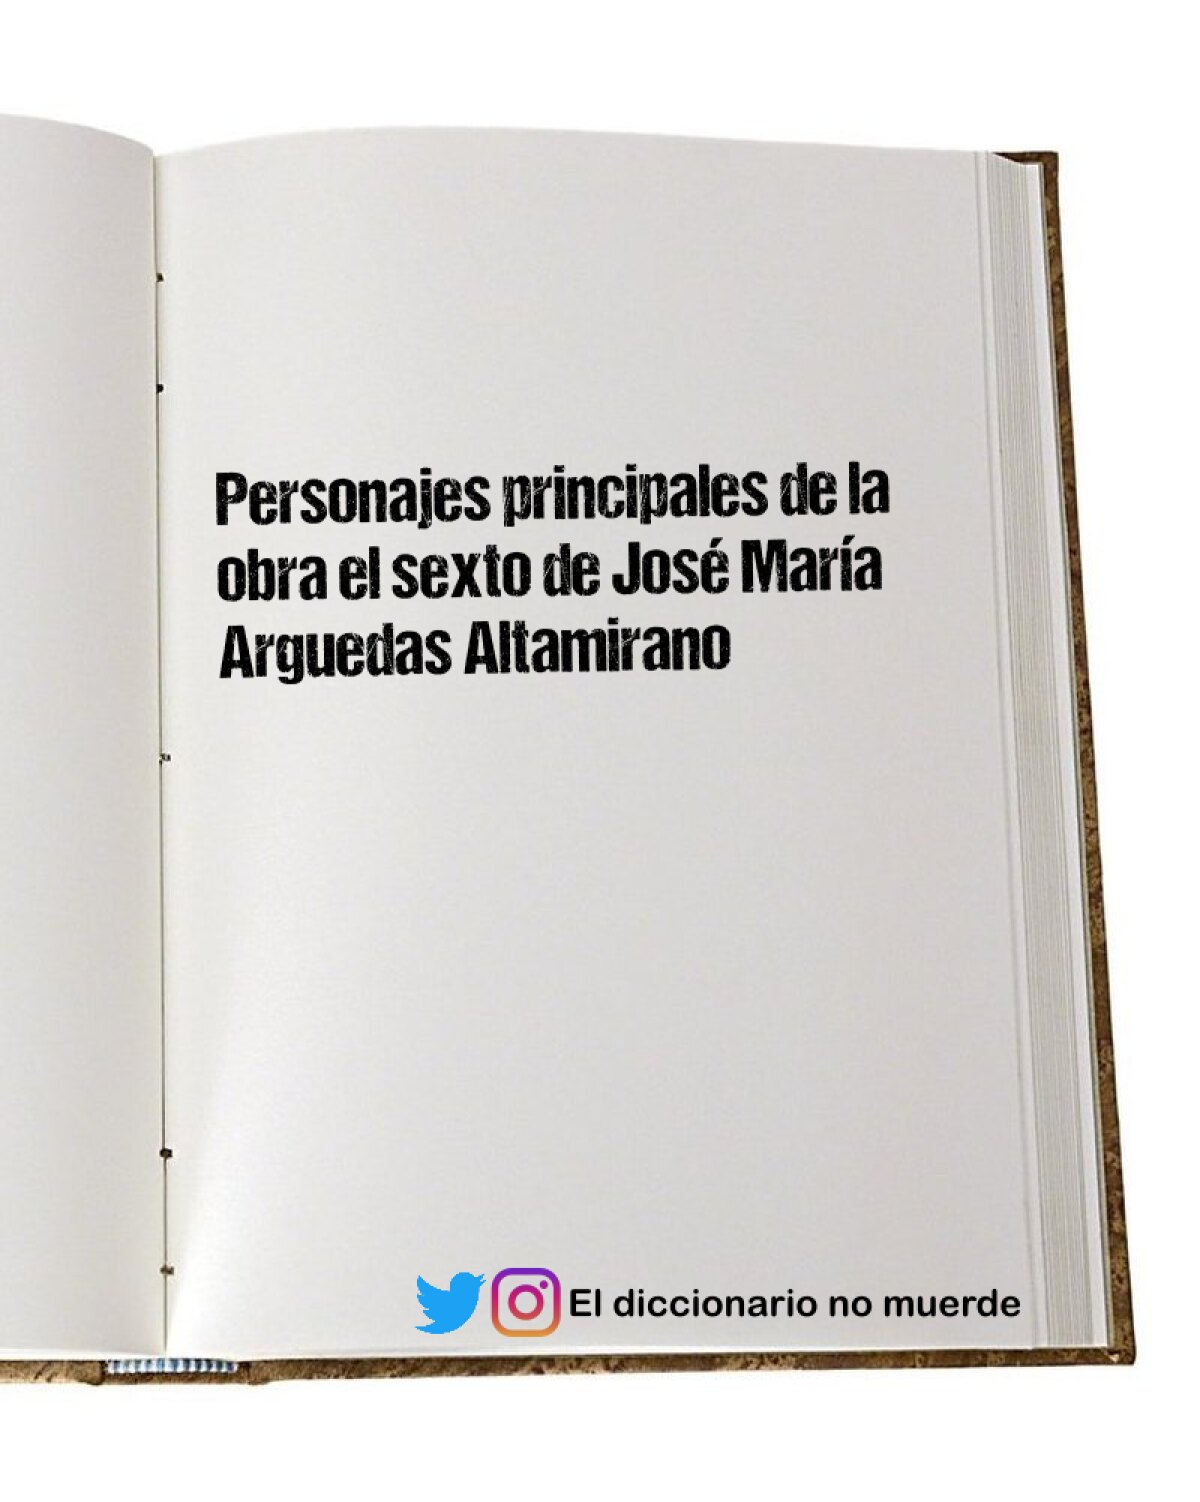 Personajes principales de la obra el sexto de José María Arguedas Altamirano